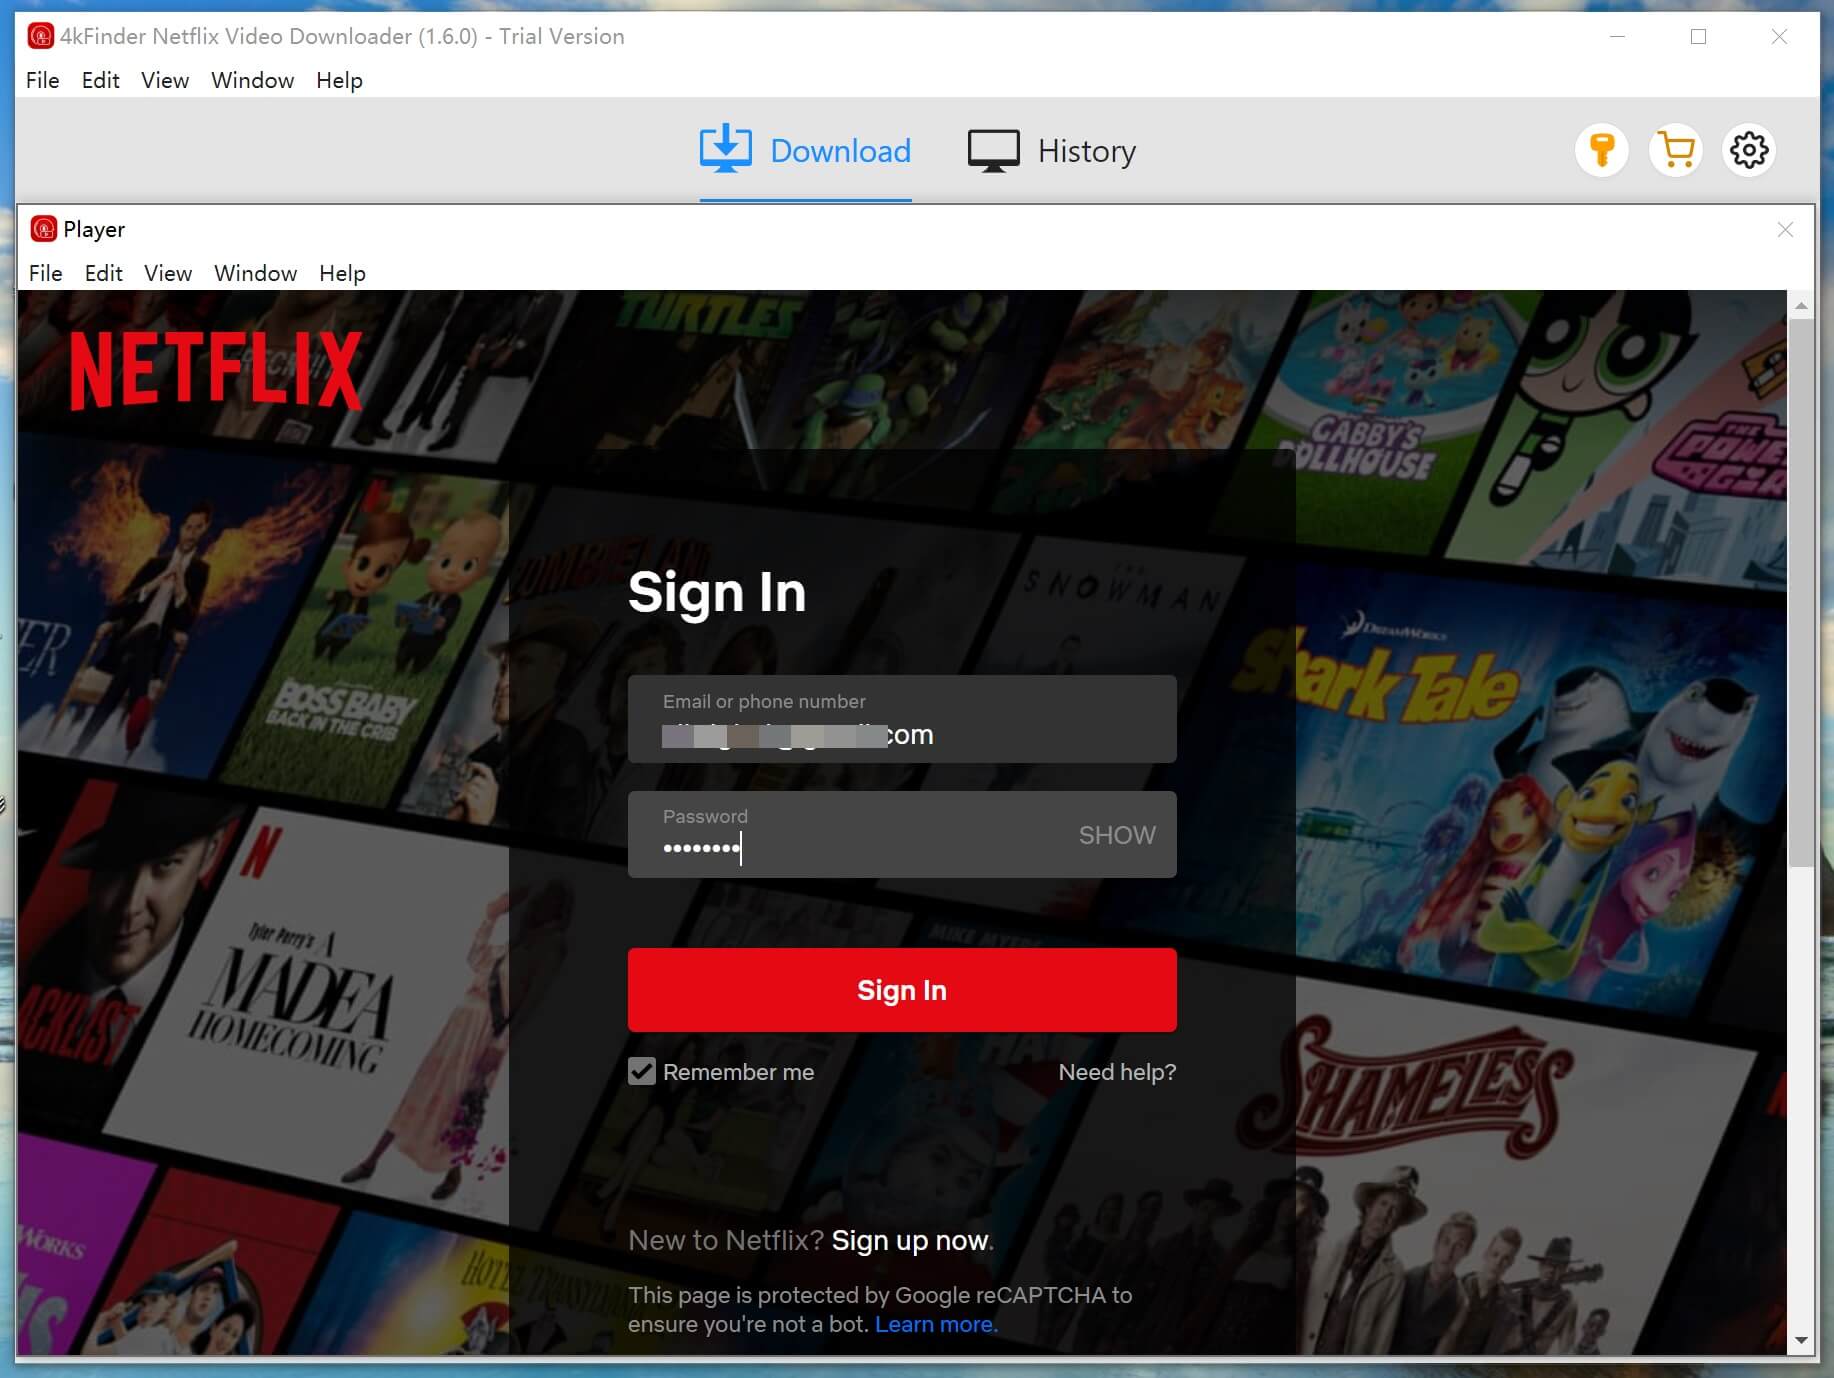 run Netflix Video Downloader